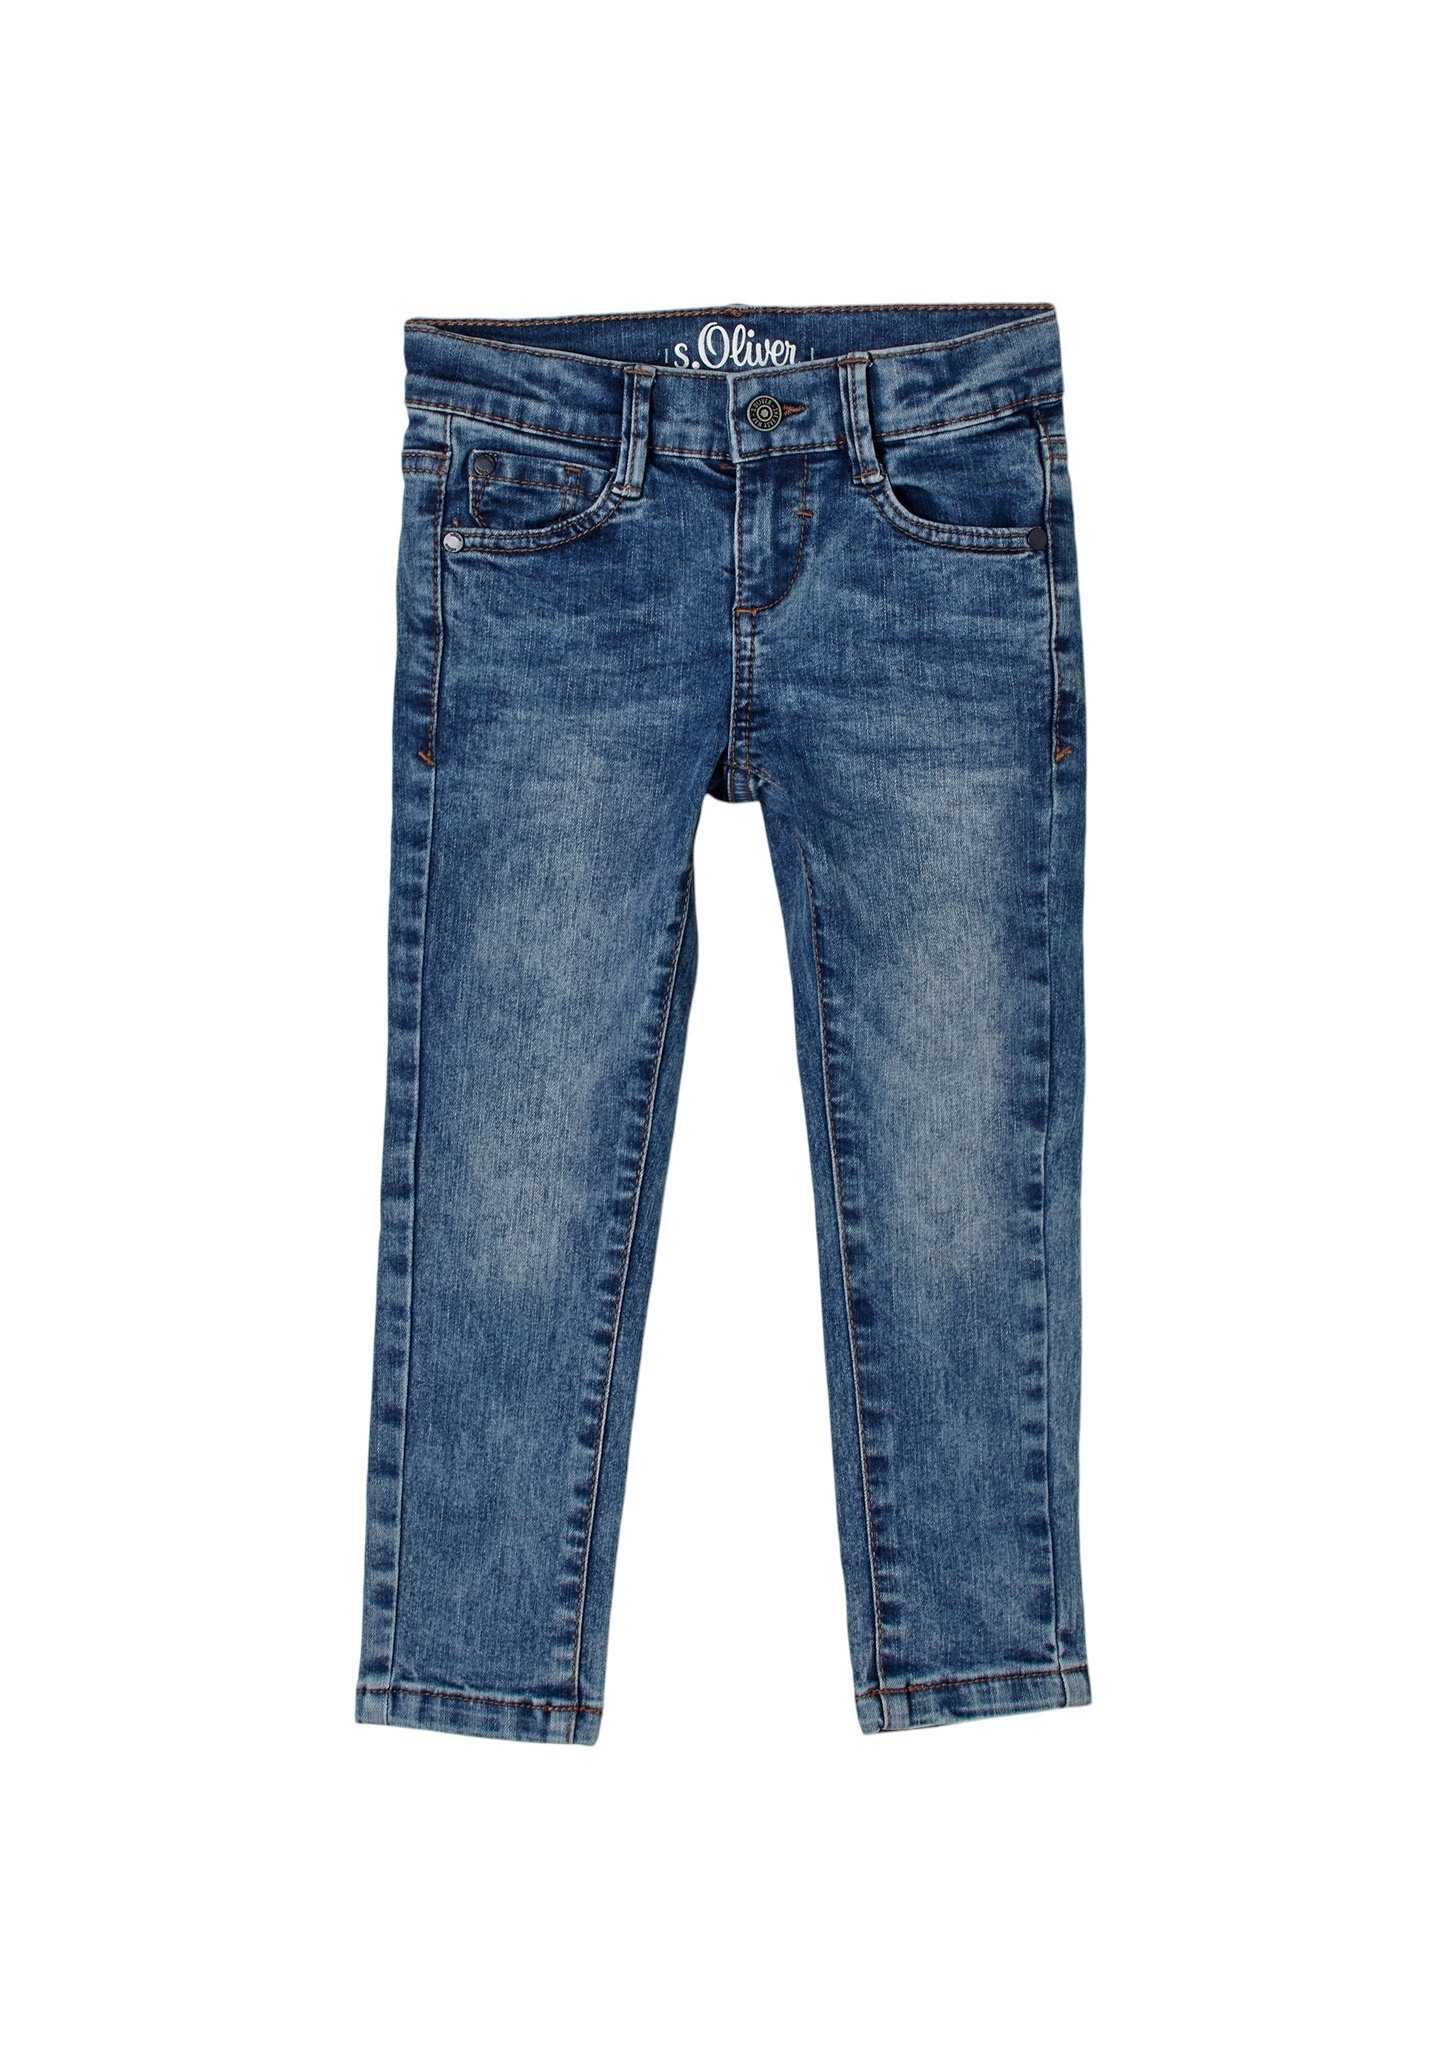 s.Oliver Skinny-fit-Jeans Skinny Brad: Jeans